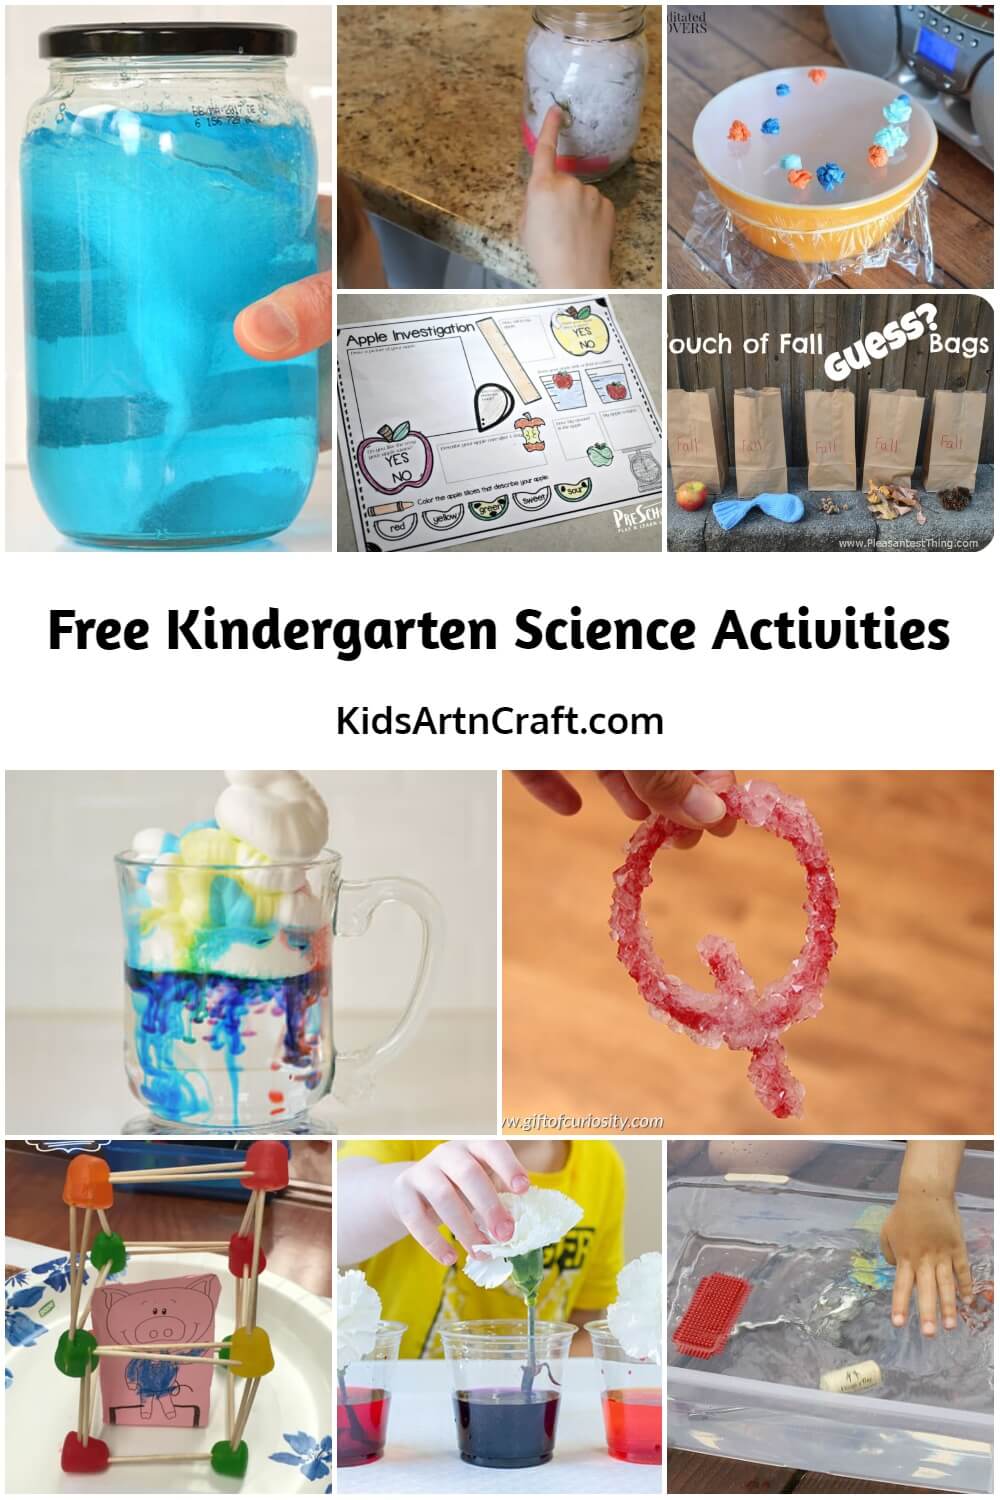 Free Kindergarten Science Activities